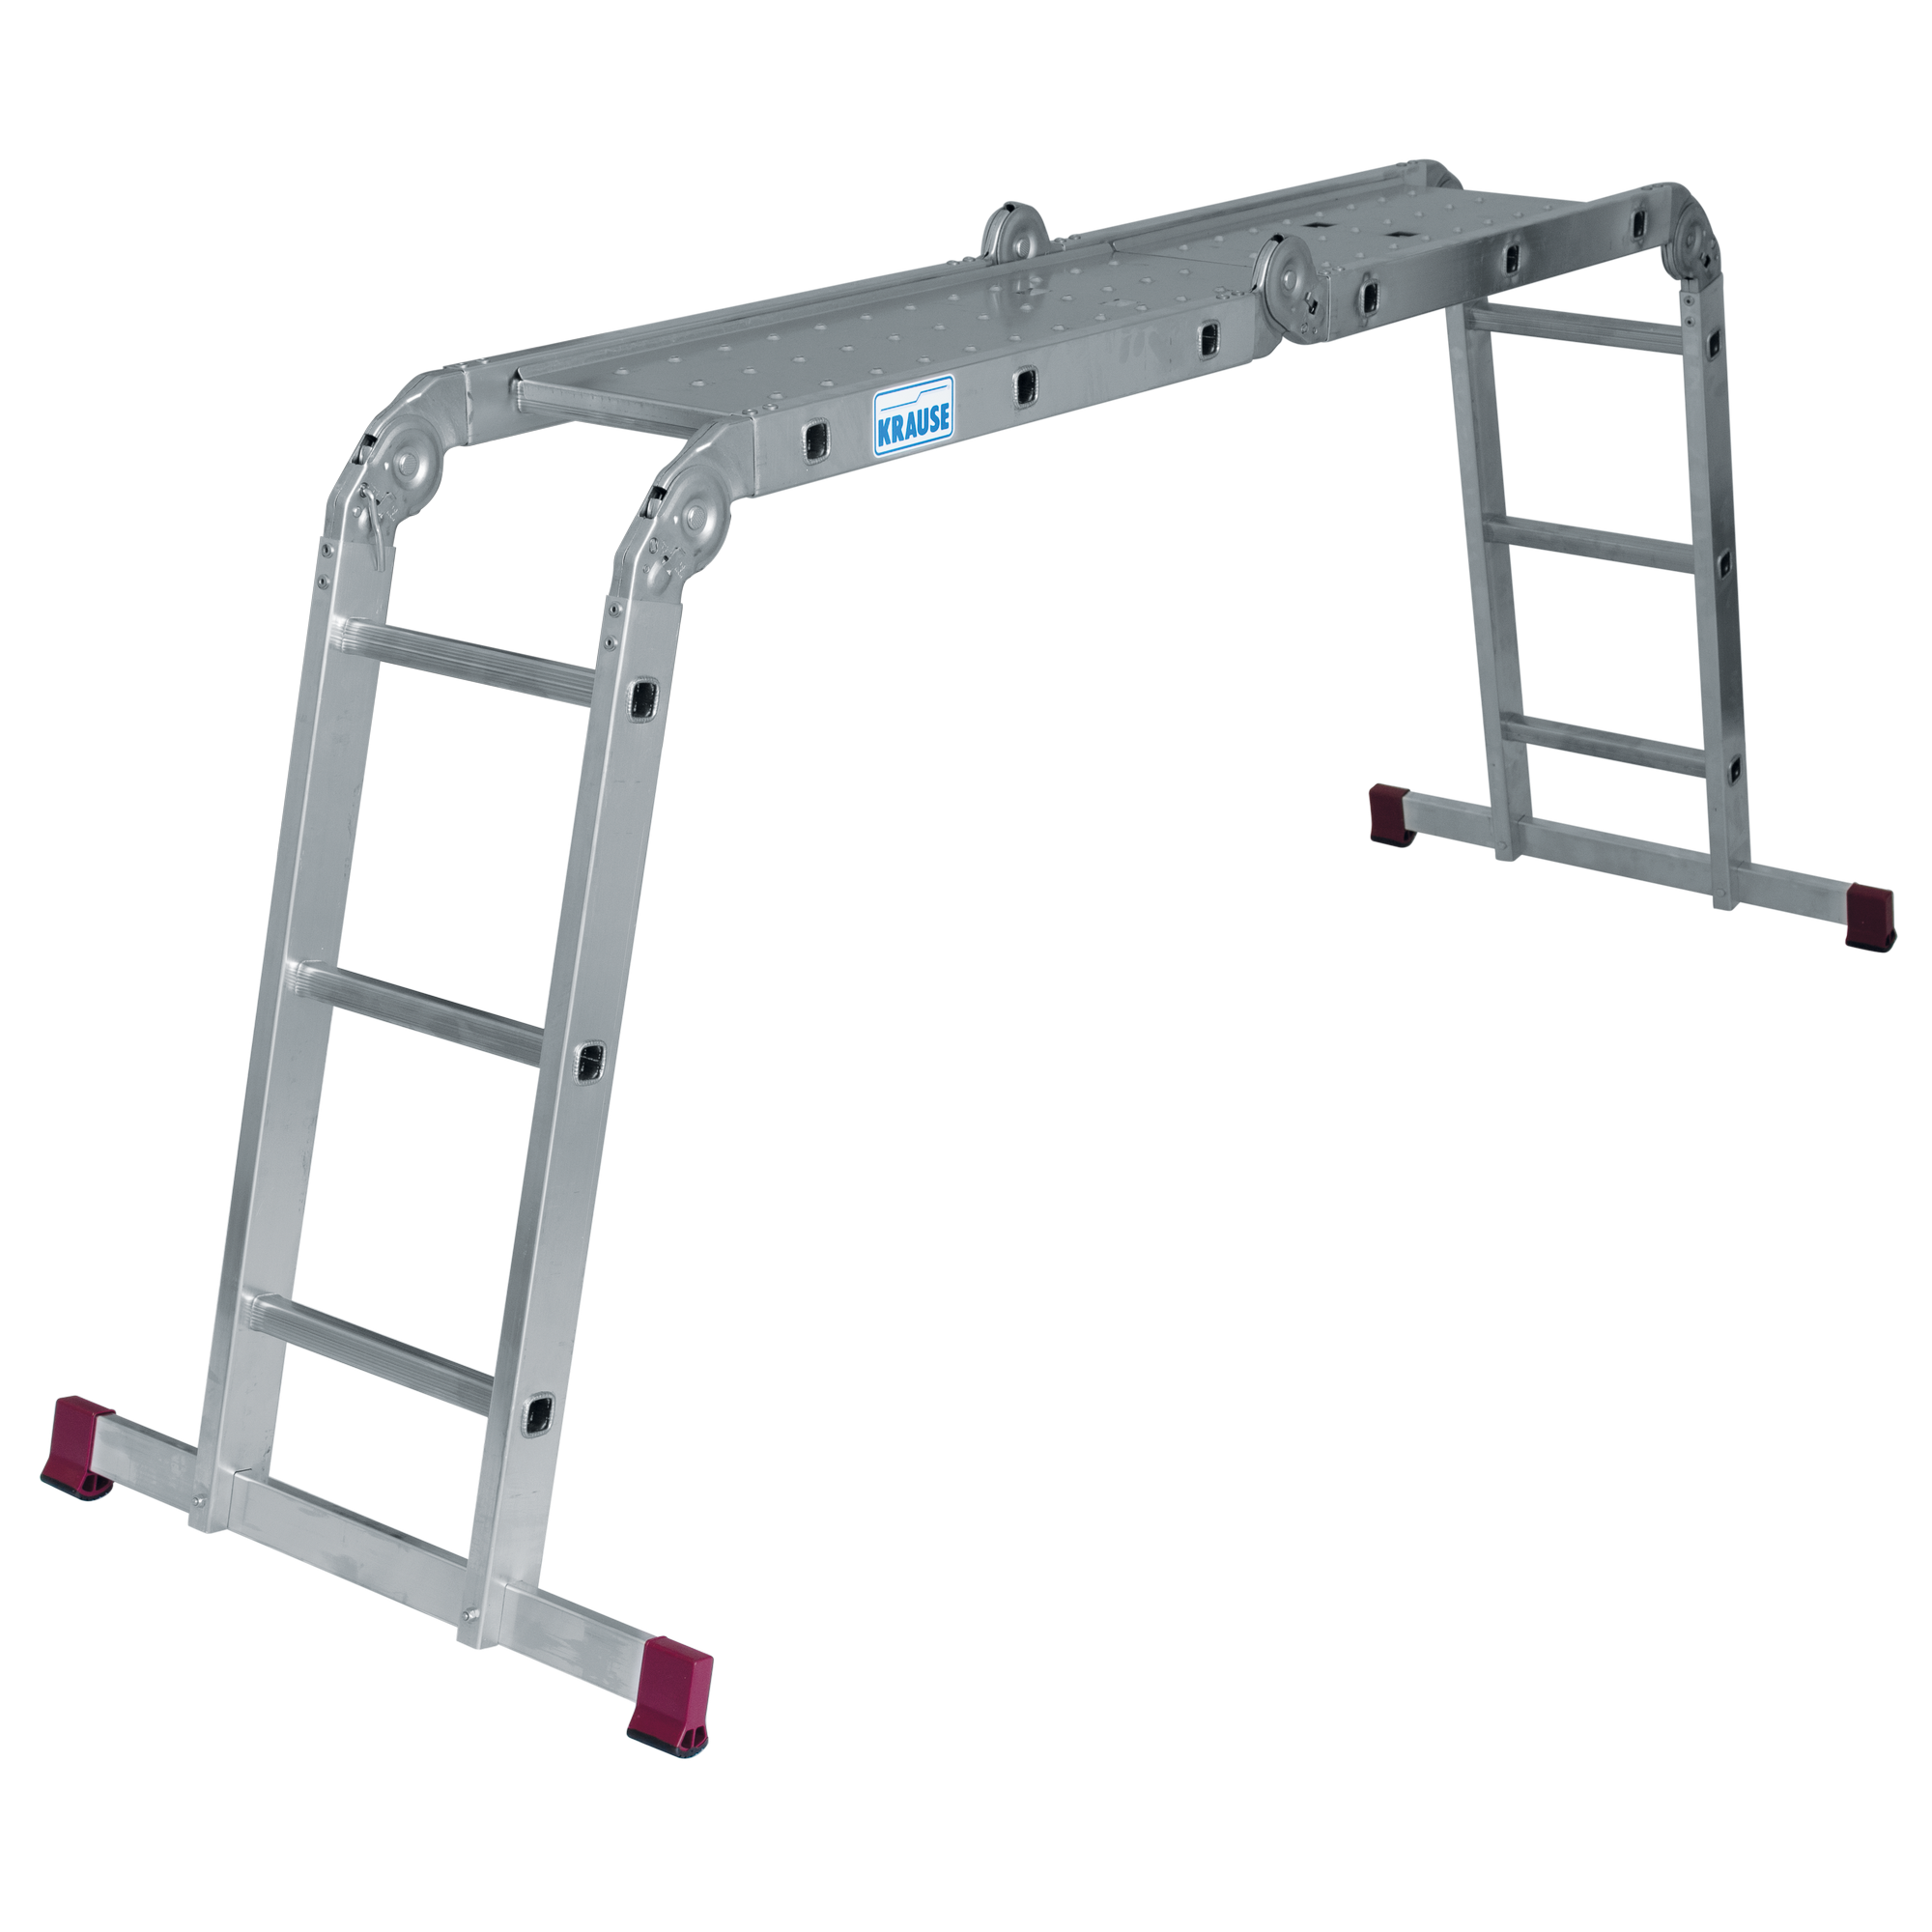 Plattform-Set für Mehrzweckleiter 'Corda' Stahl, 142 x 28 cm + product picture